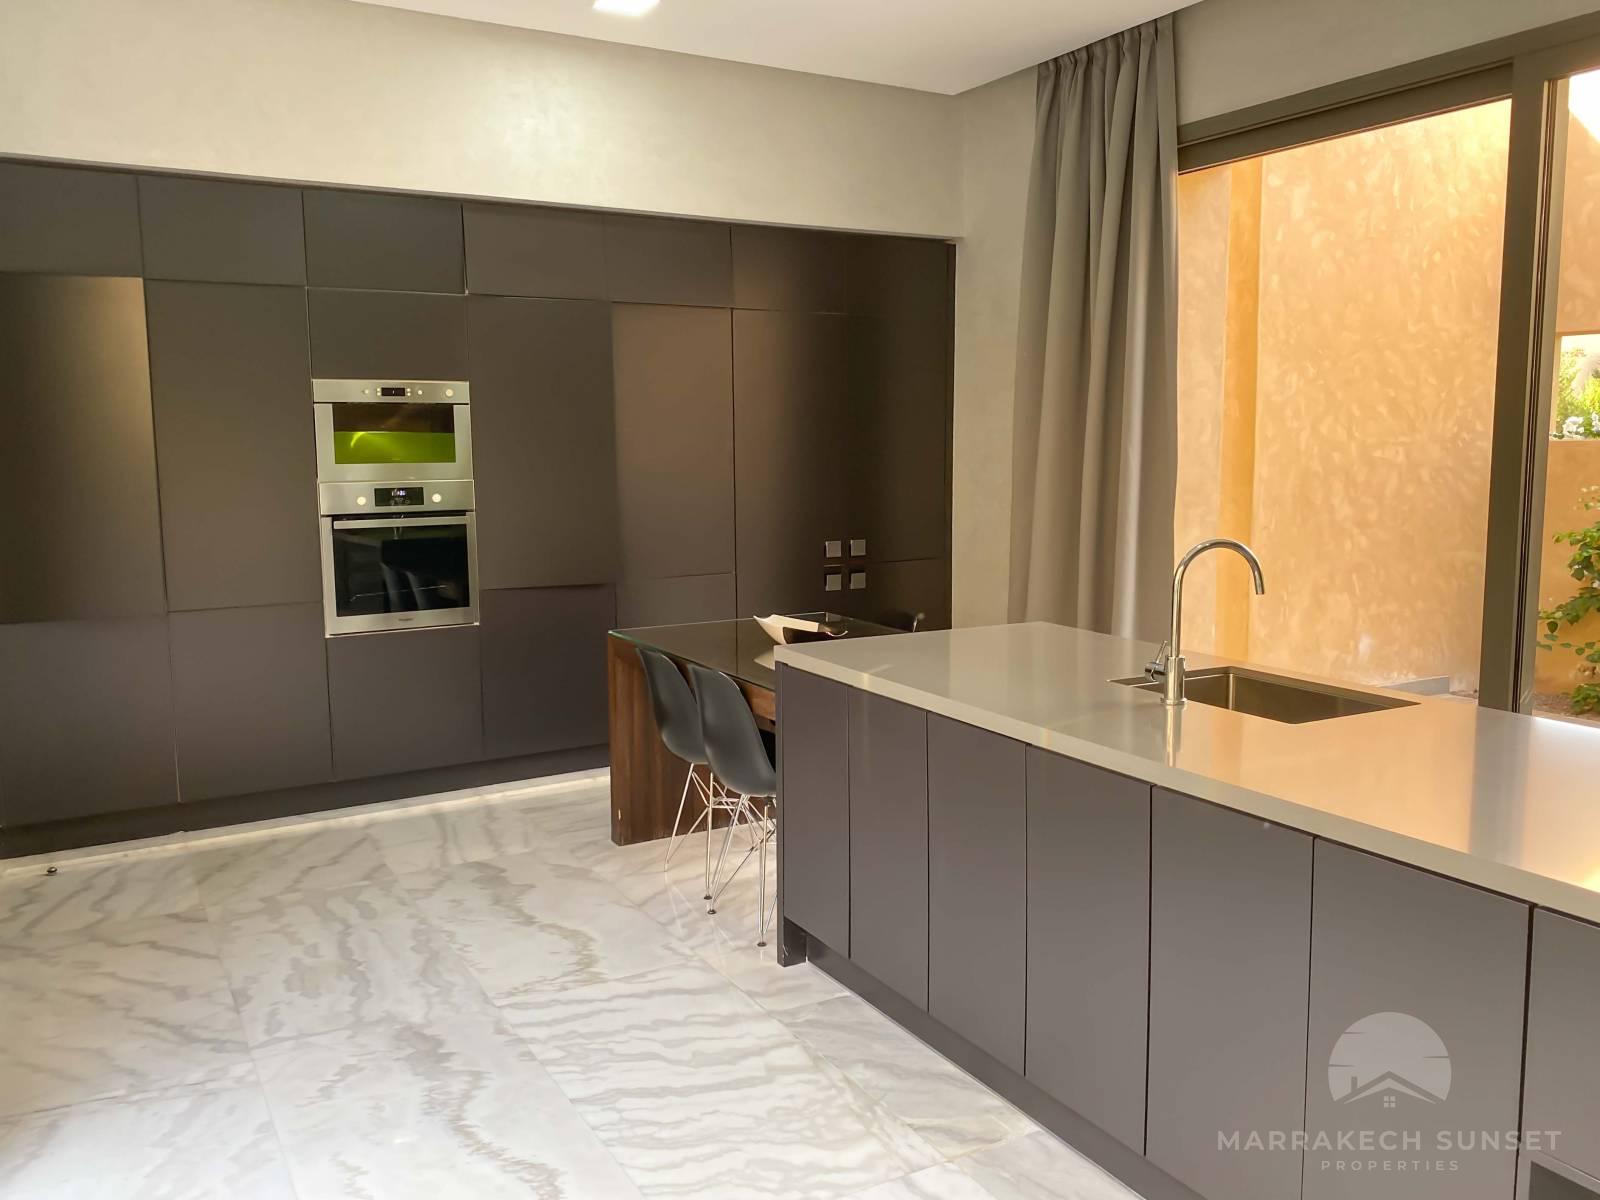 Premium 5 bedroom Luxury villa for sale in a private domain Marrakech